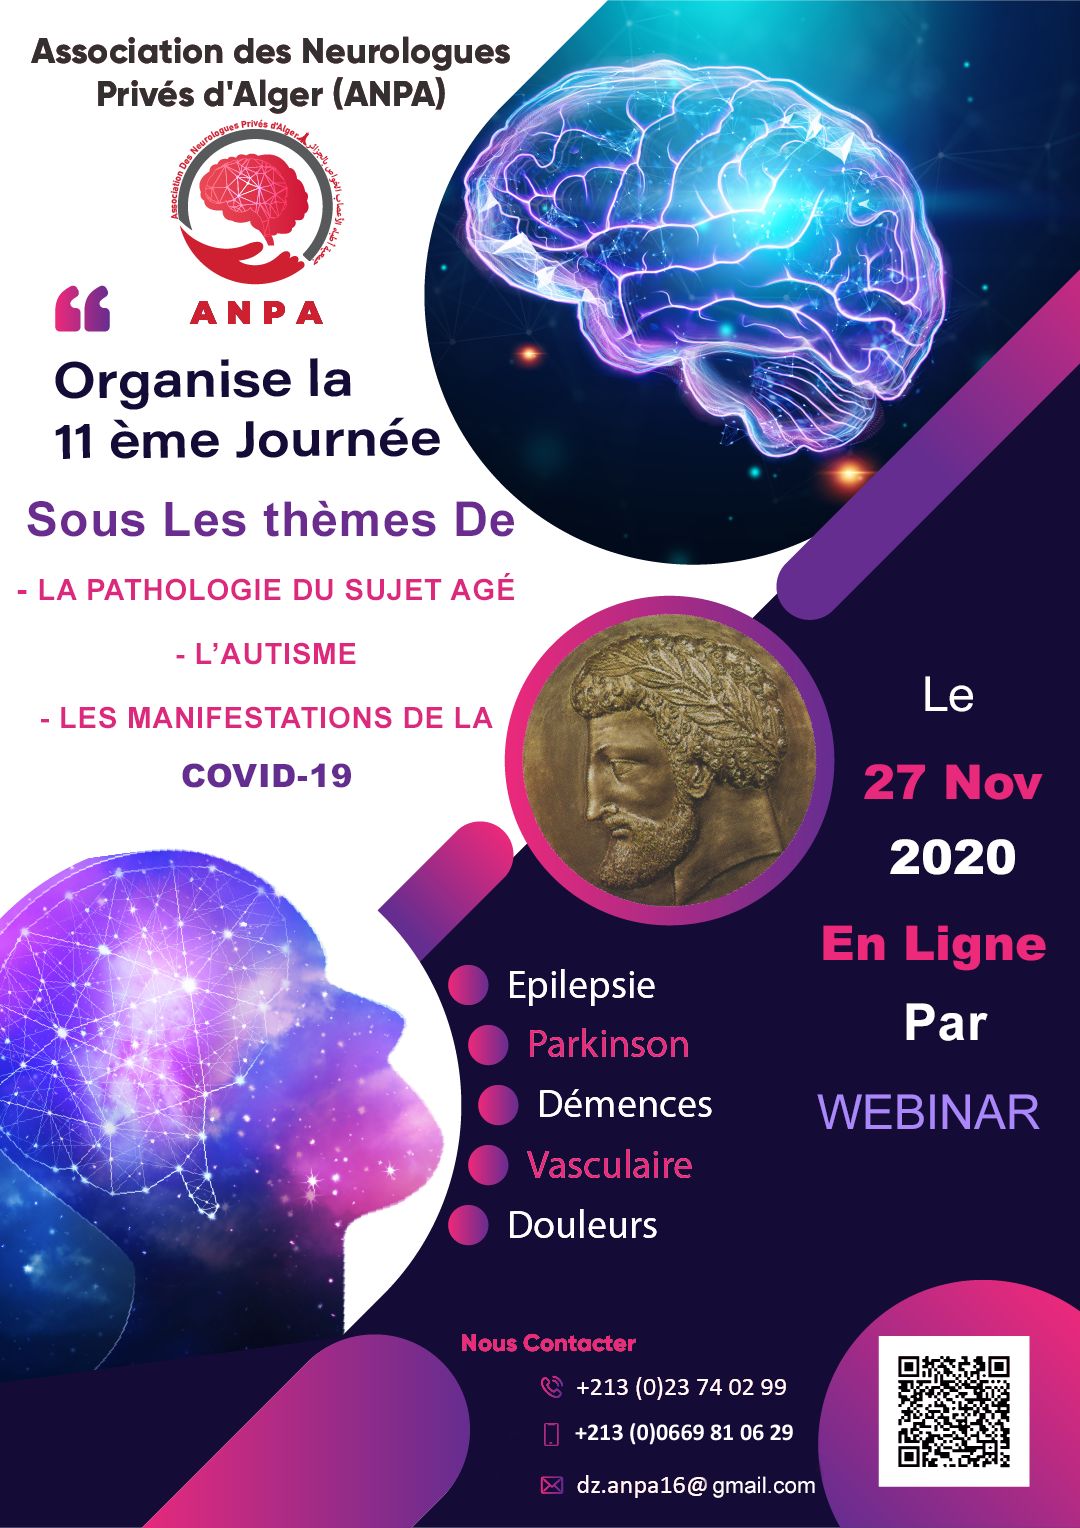 11 éme Journée de  l'Association des Neurologues Privés d’Alger  "ANPA"   en ligne par Webinar  -  27 Novembre 2020 affiche